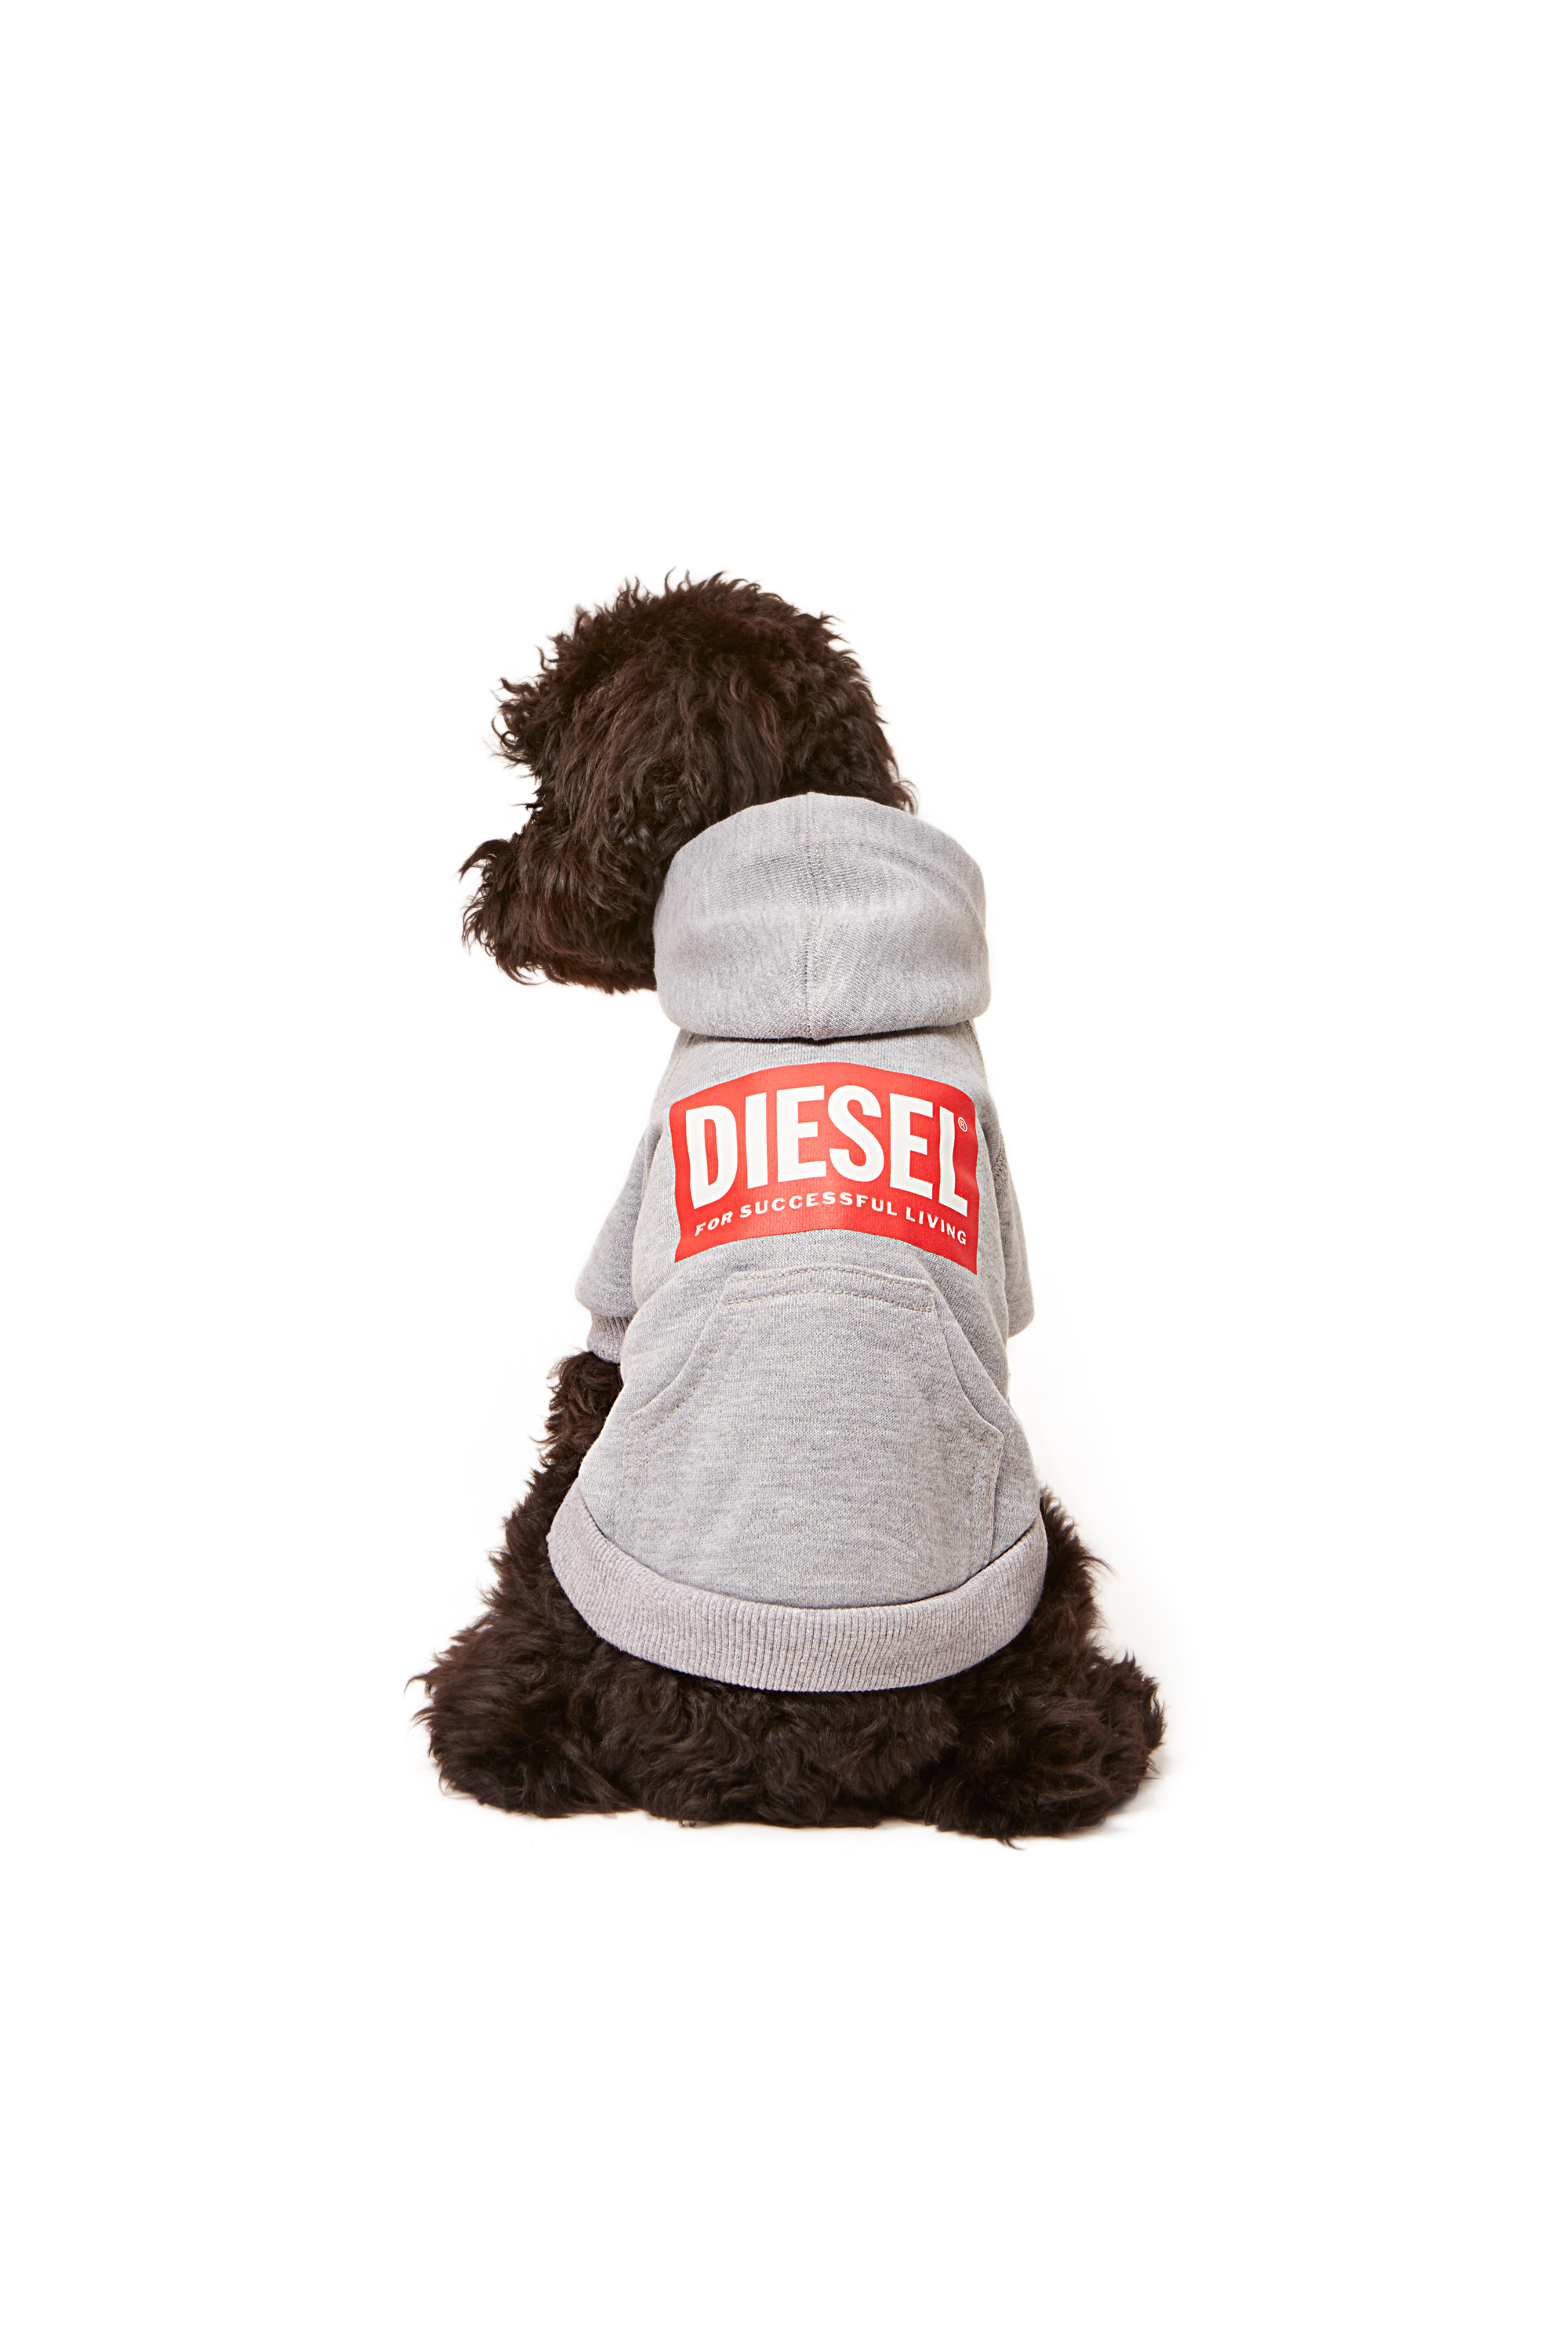 Diesel - PET-SCOTTO, Grigio - Image 4